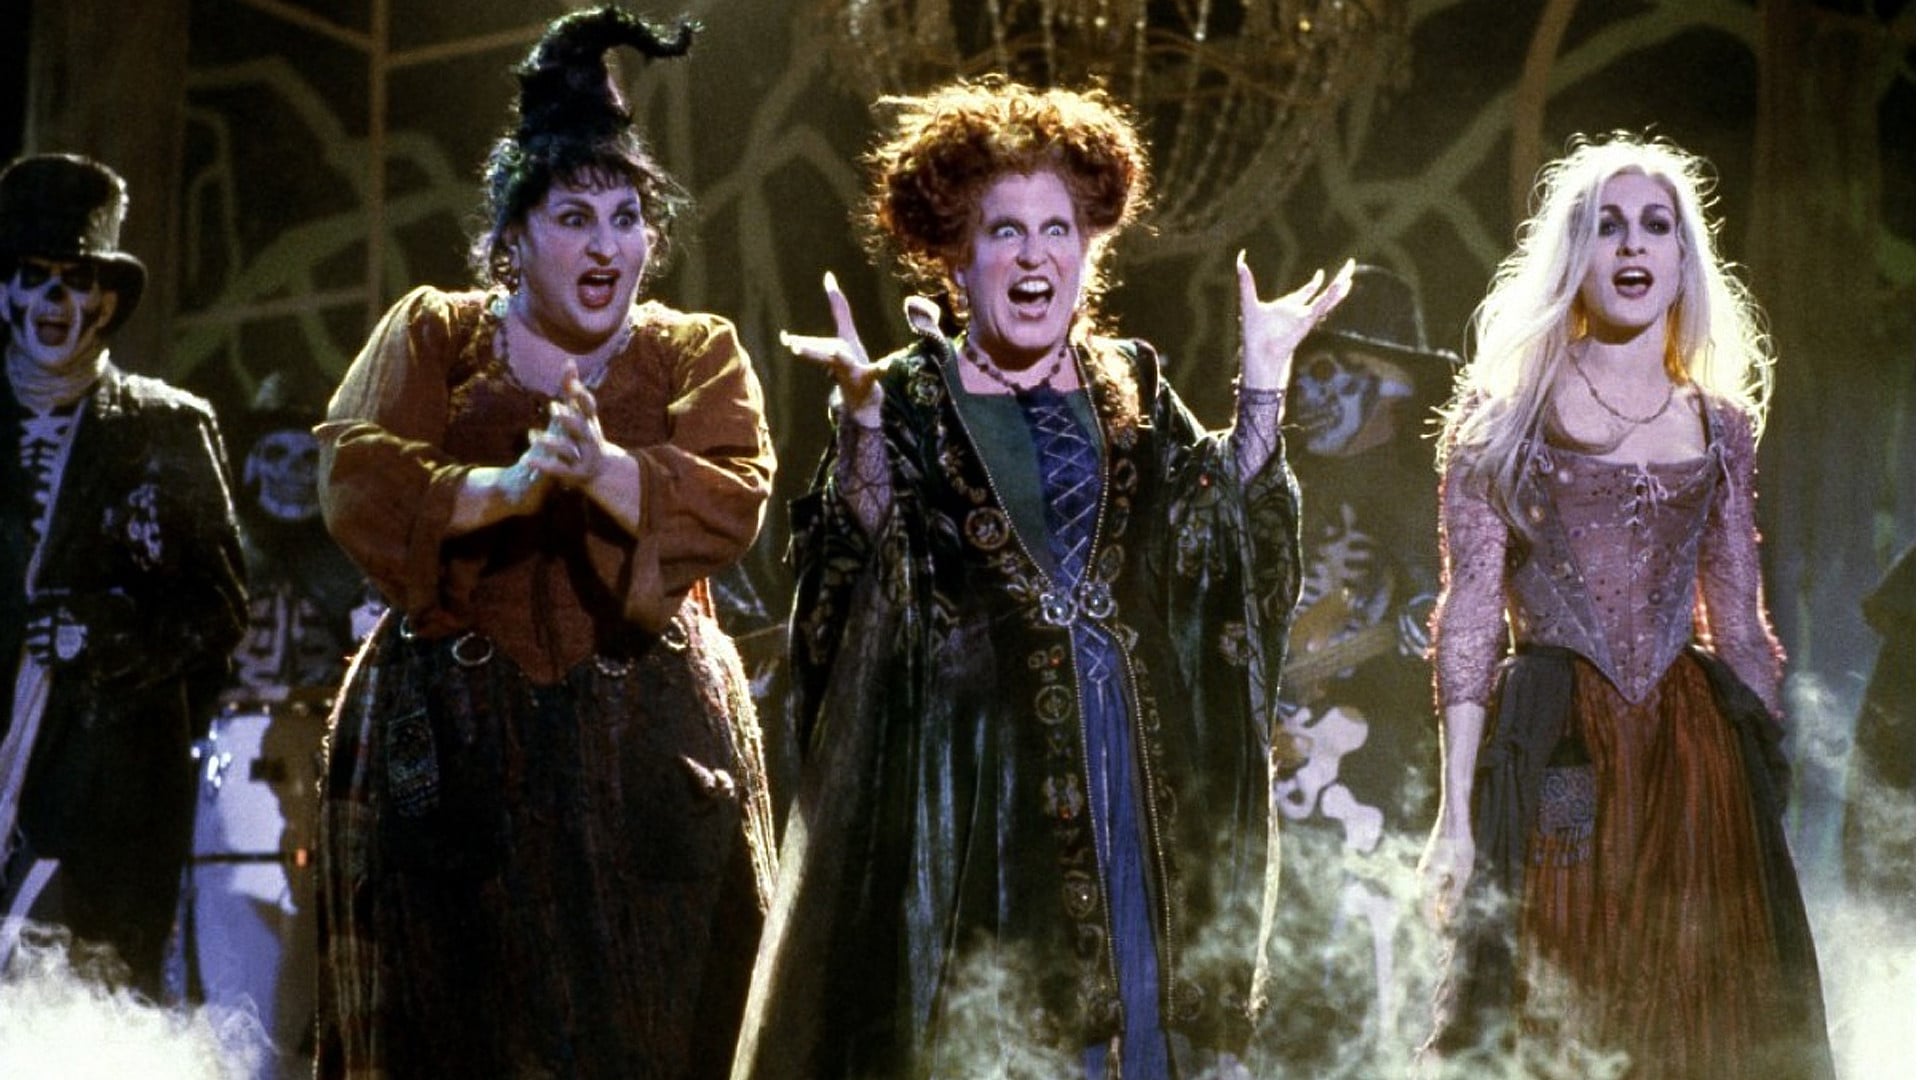 Image du film "Hocus Pocus: Les trois sorcières"